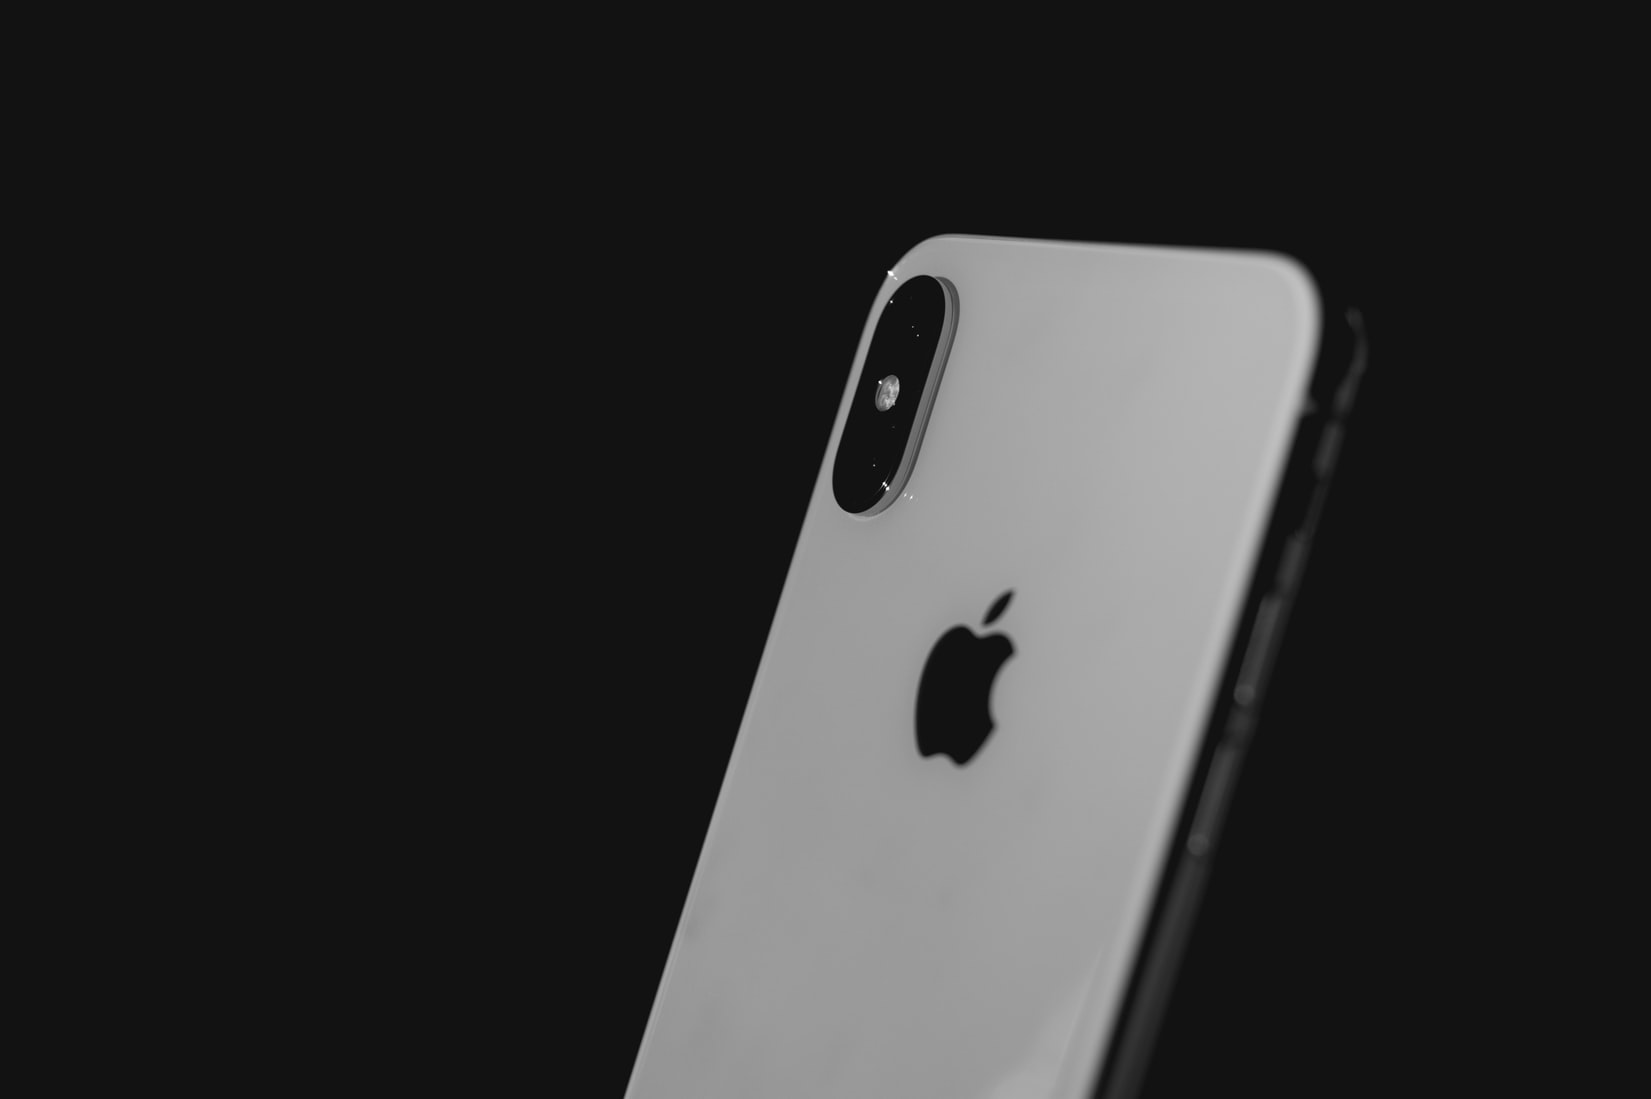 Apple prévoit de vendre beaucoup plus d'iPhone en 2020 et 2021 grâce à la 5G